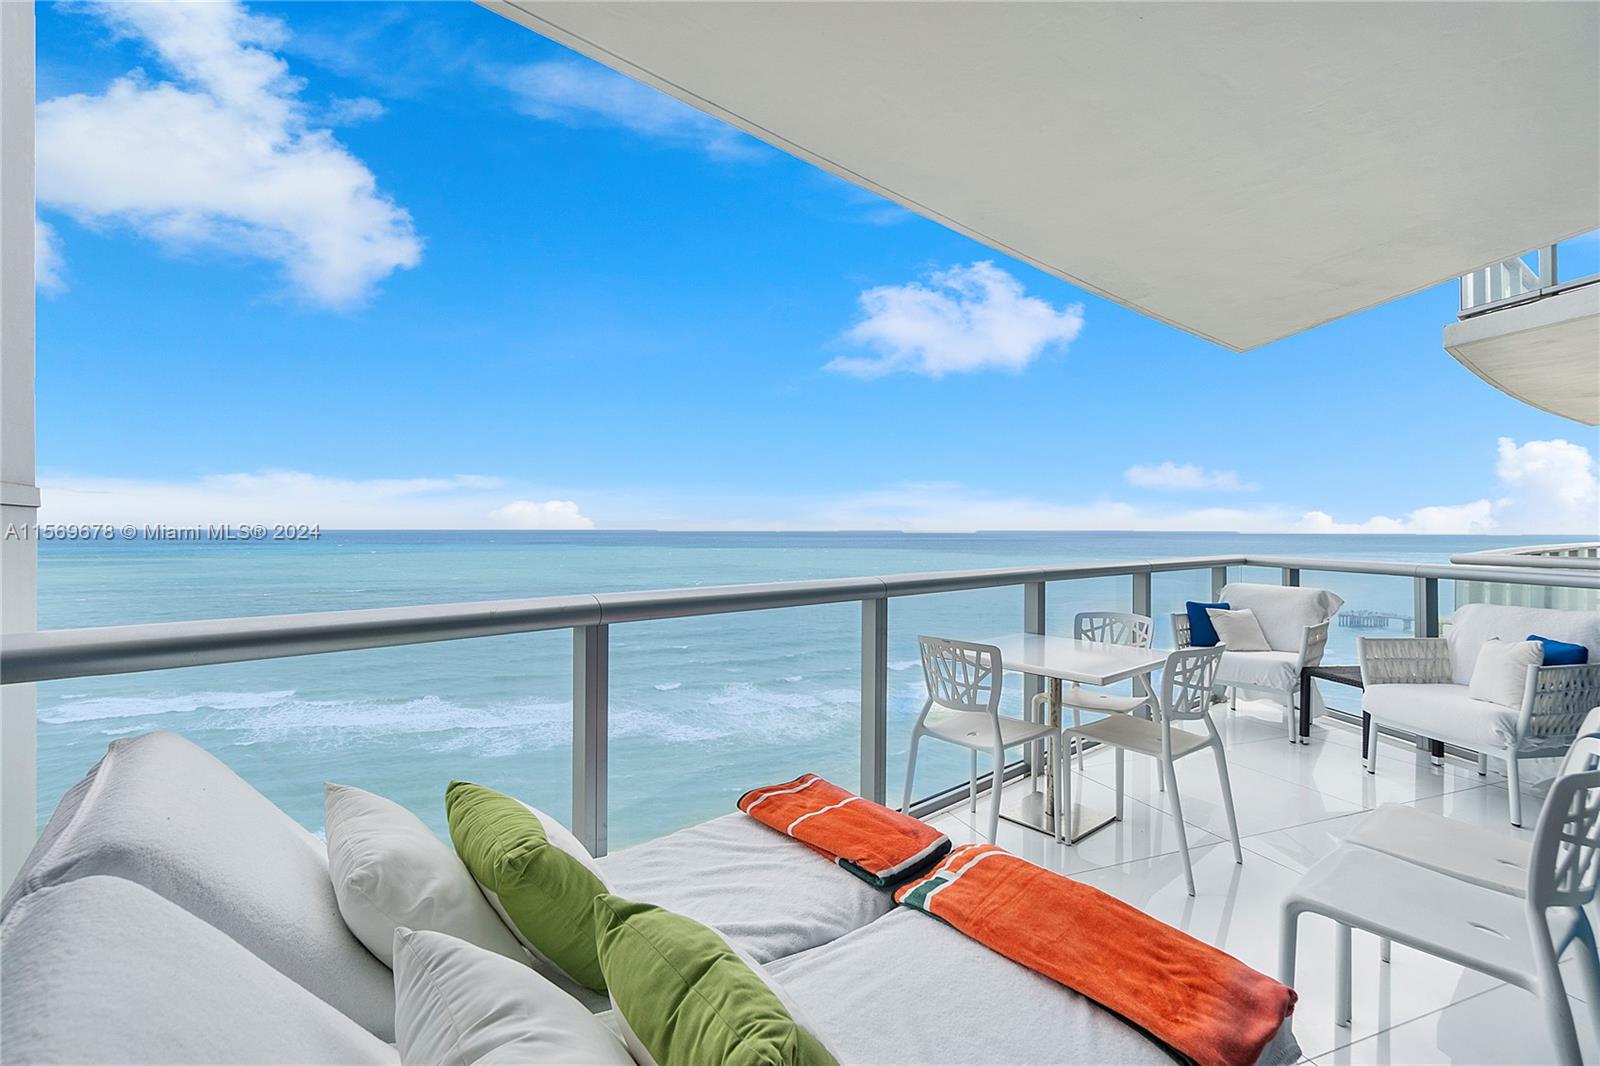 Condo for Rent in Sunny Isles Beach, FL